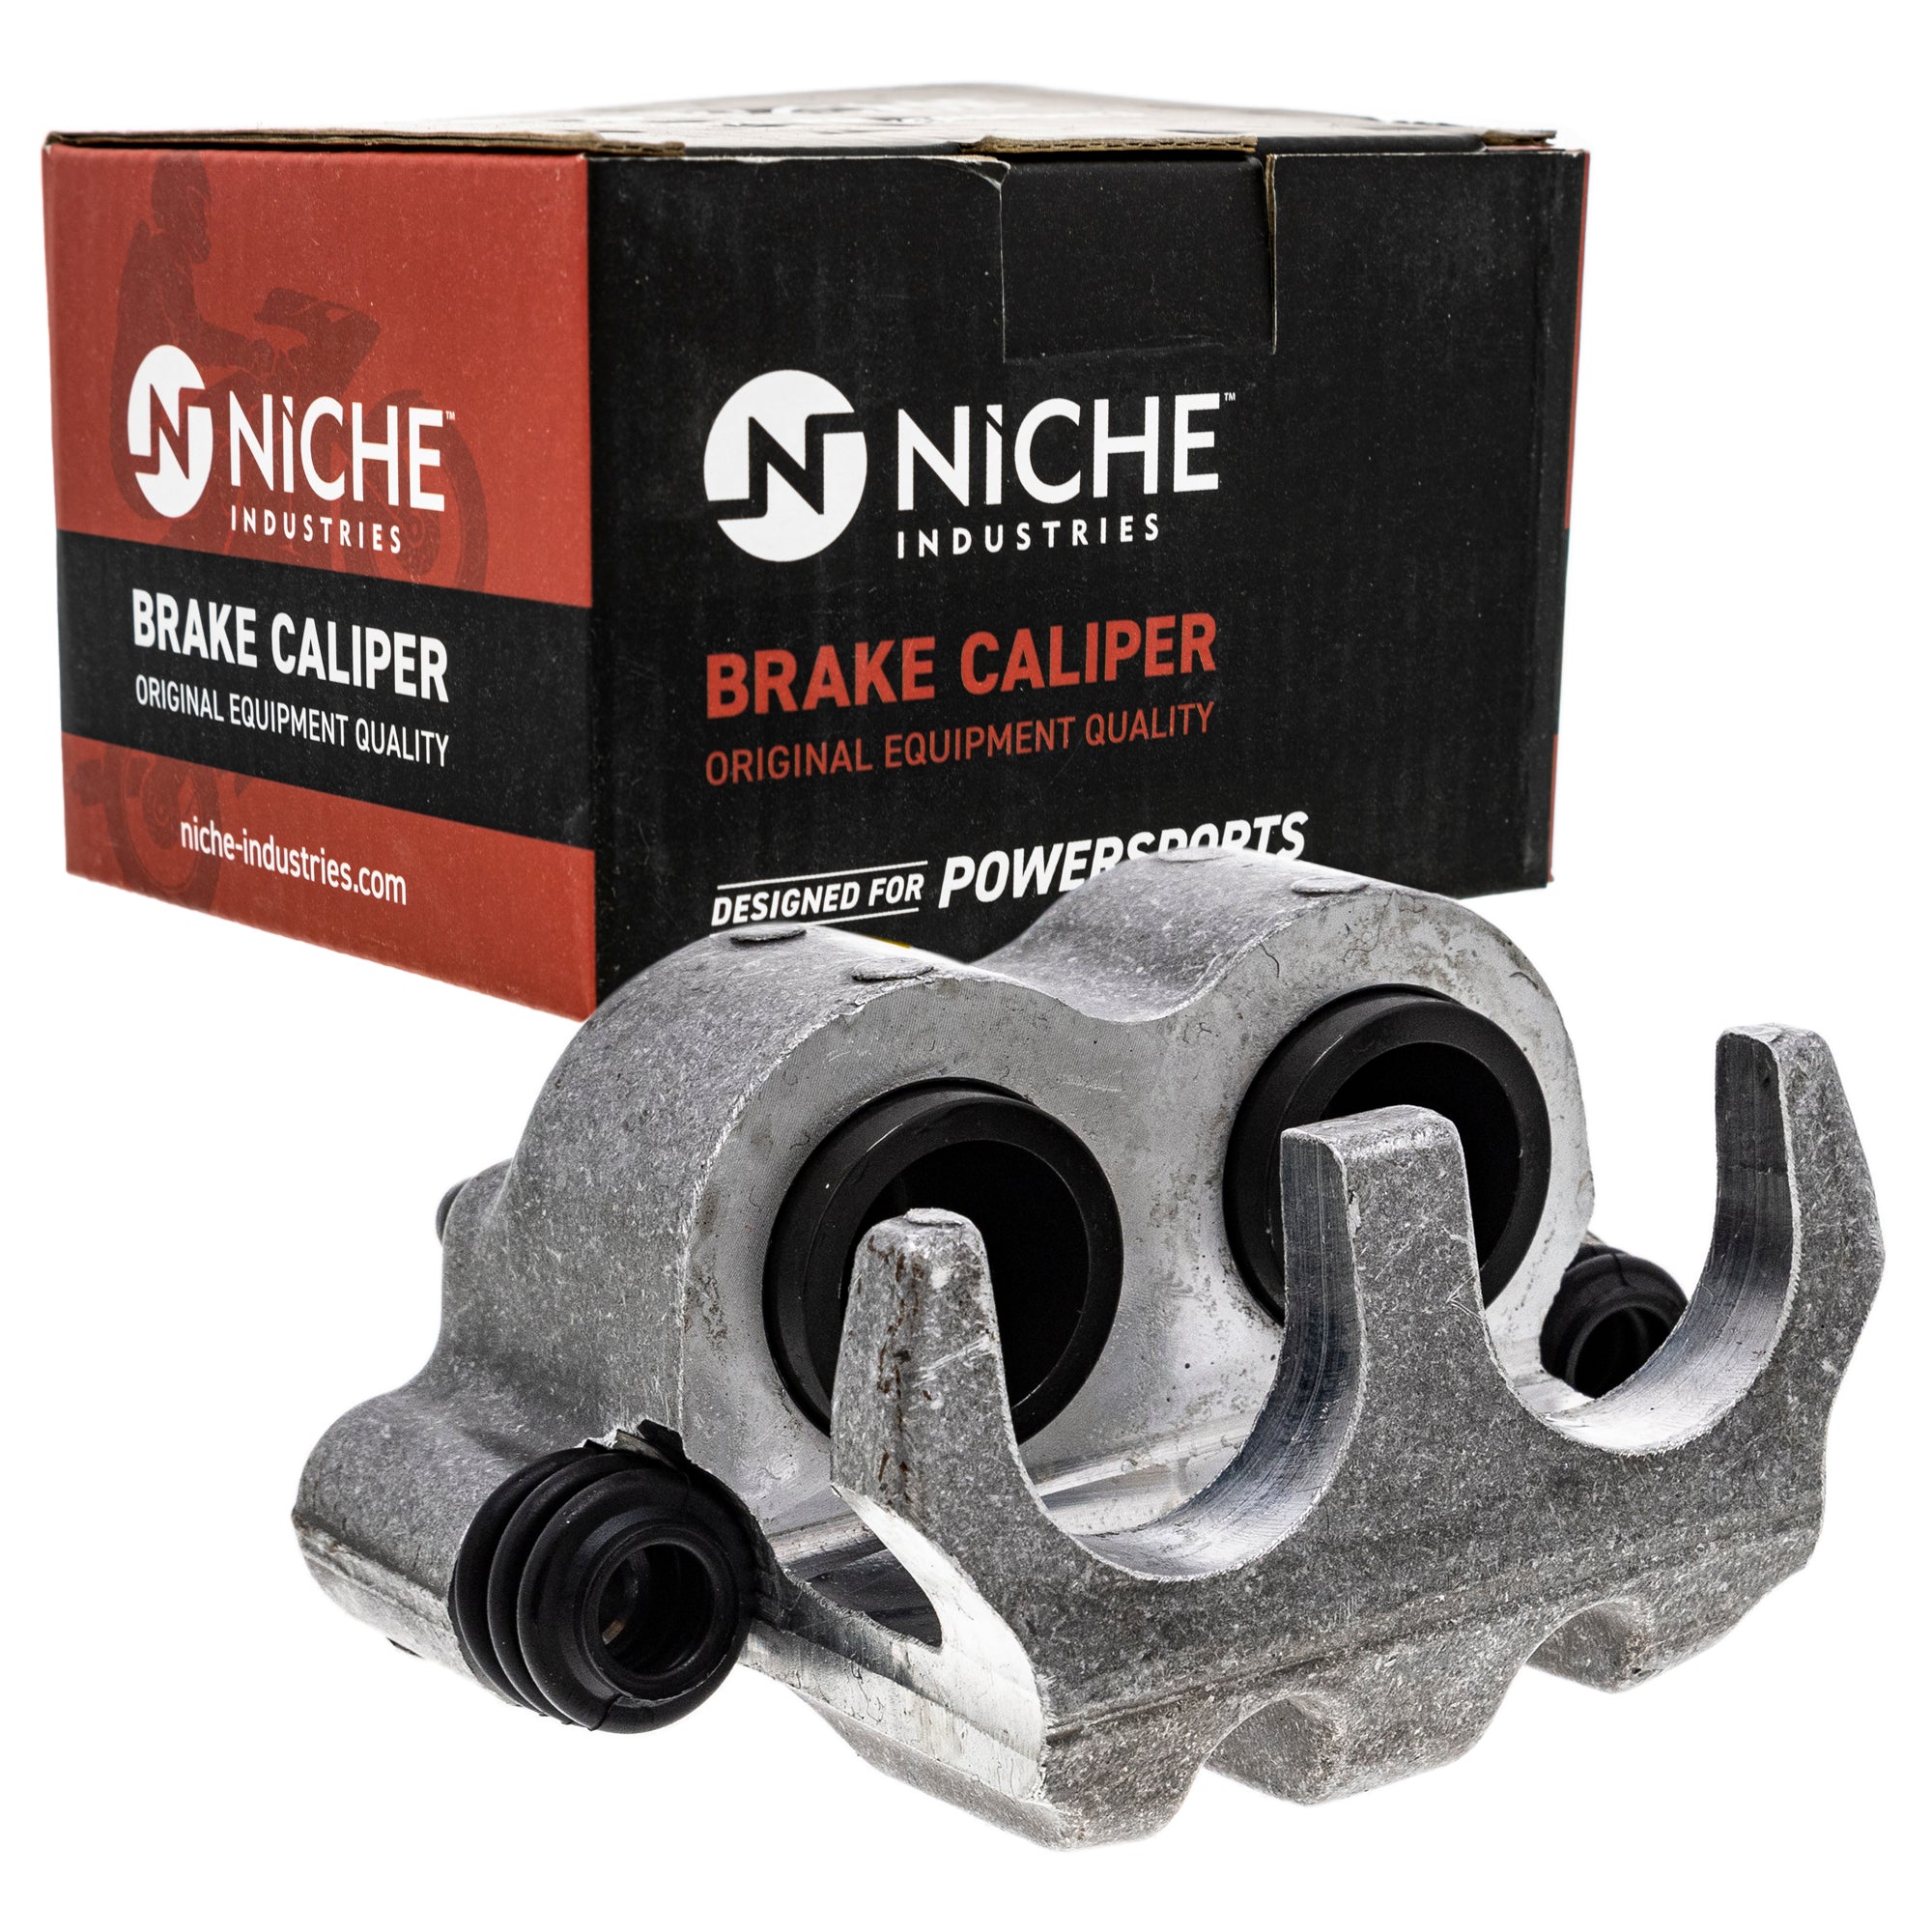 NICHE MK1001279 Brake Caliper Kit